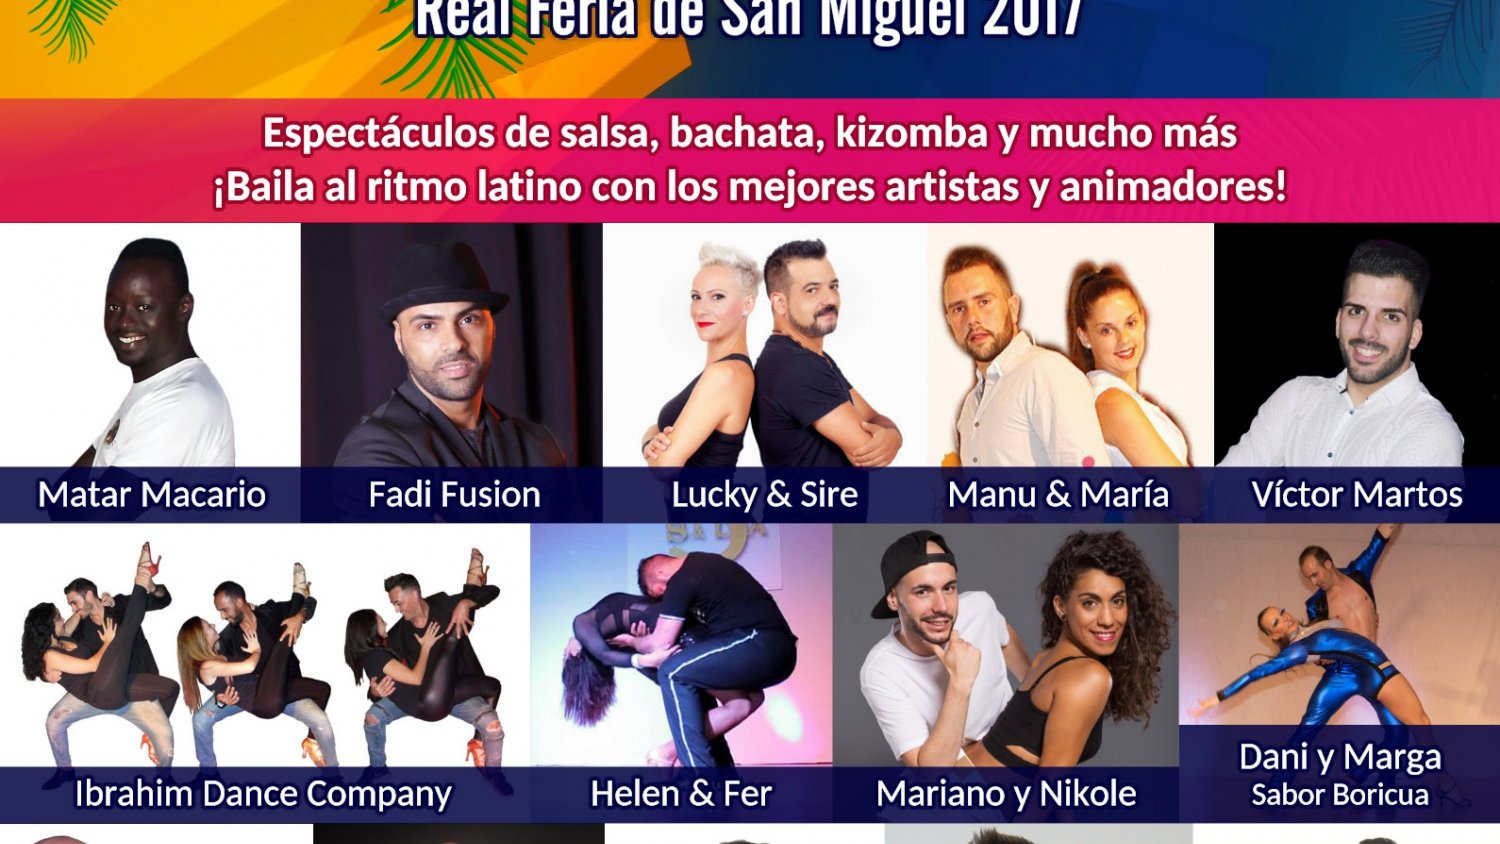 Vélez-Málaga organiza el I Festival de Salsa de la Real Feria de San Miguel con profesores de 8 nacionalidades